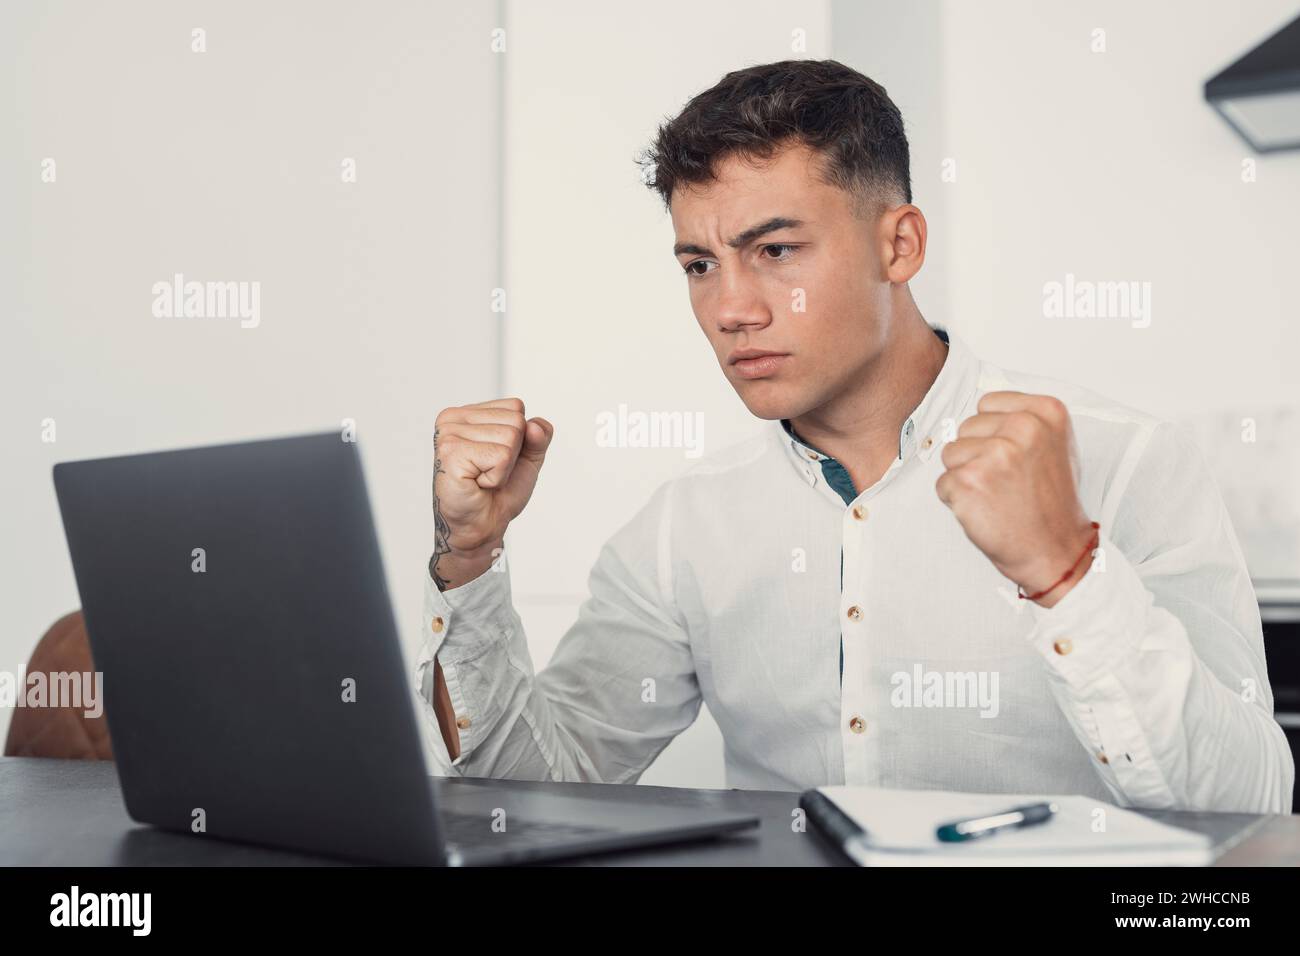 Unglücklicher junger kaukasischer männlicher Arbeiter in Brille schaut auf den Laptop-Bildschirm schockiert von einem Geräteausfall oder Betriebsproblemen. Frustrierter Mann verwirrt von unerwartetem Fehler auf dem Computergerät. Stockfoto